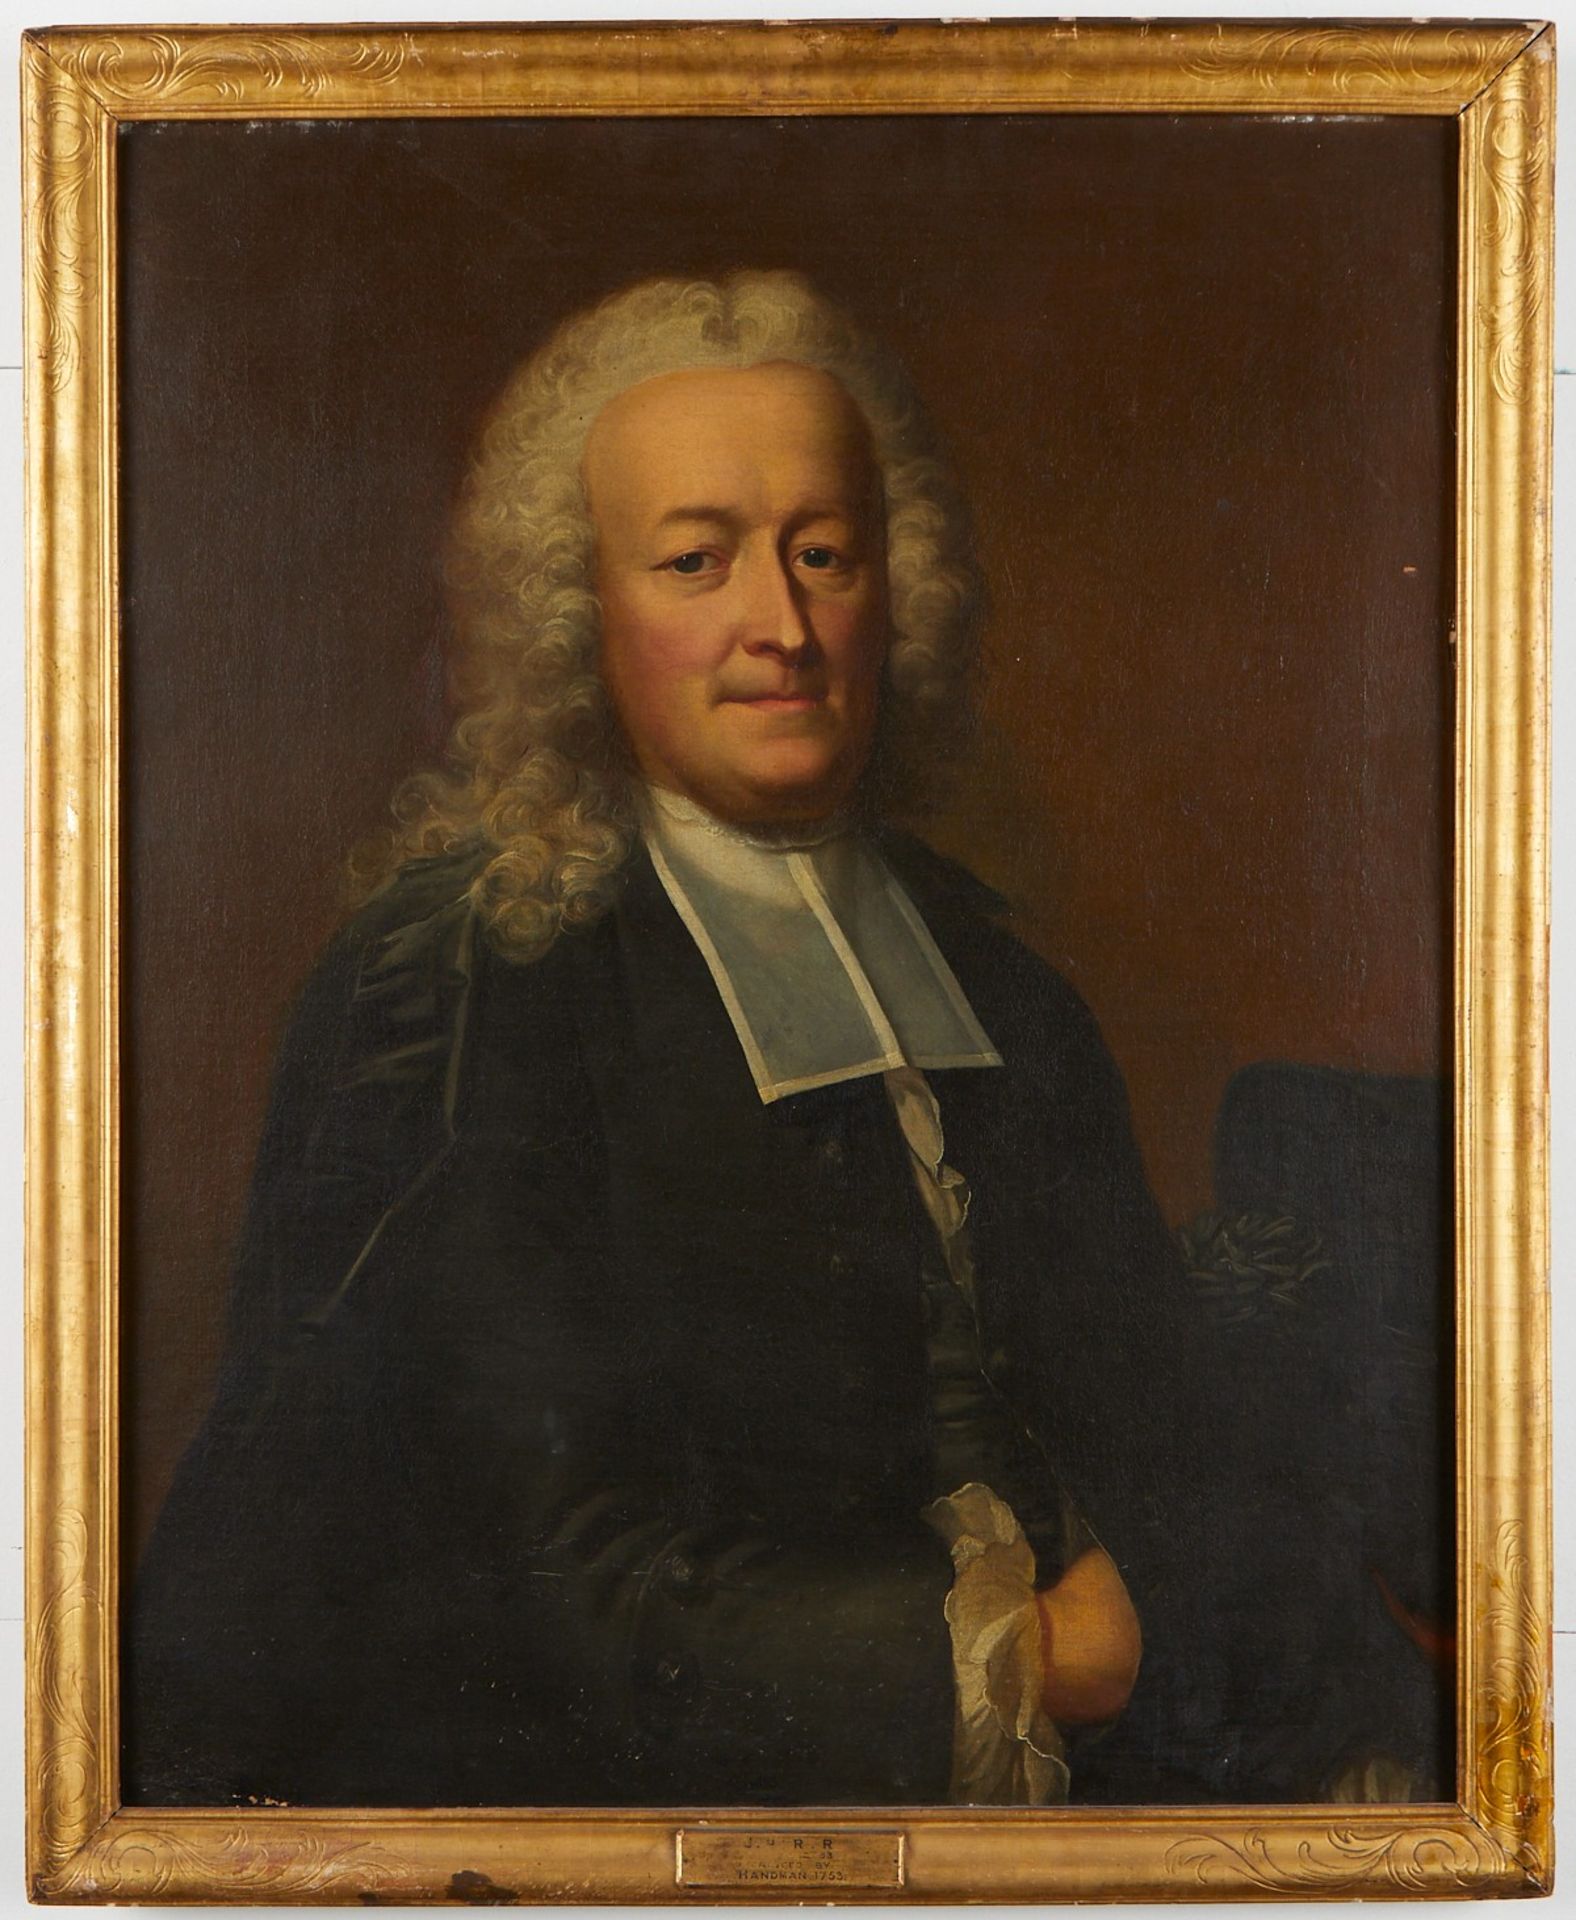 Emmanuel Handmann Portrait of a Clergyman Painting